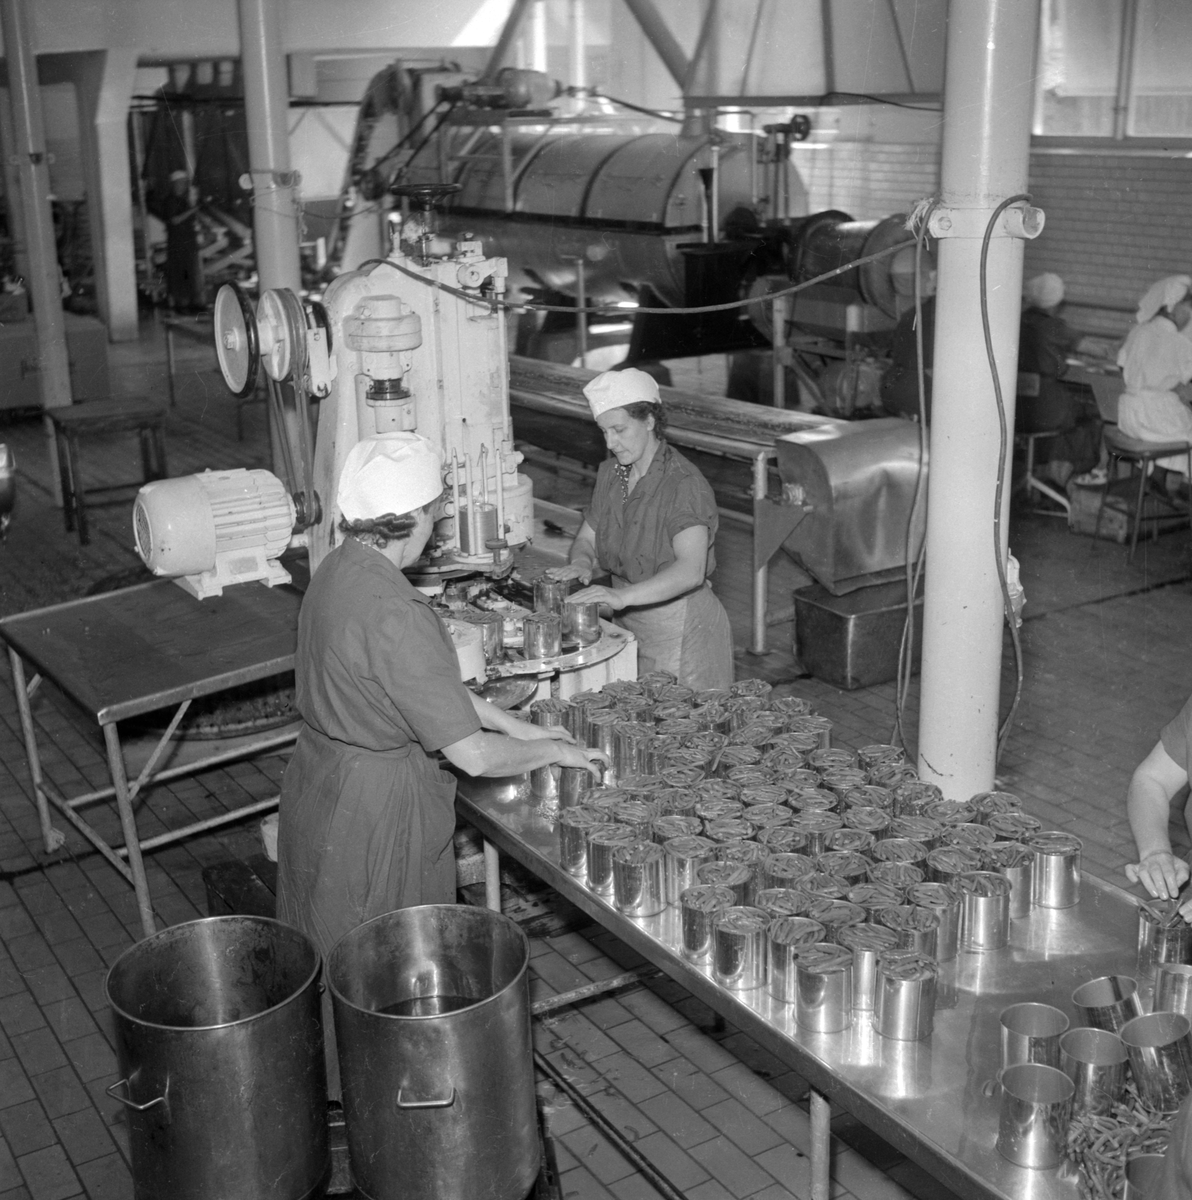 AB Konservfabriken Sirius i Göteborg öppnade omkring 1940 en filialfabrik i Linköping. Verksamheten var förlagd till Nykvarn och leddes av fabrikschefen John Jolbäck. Här en inblick i arbetet där bönor burkläggs i hast. Fabriken i Linköping lades ned 1954.